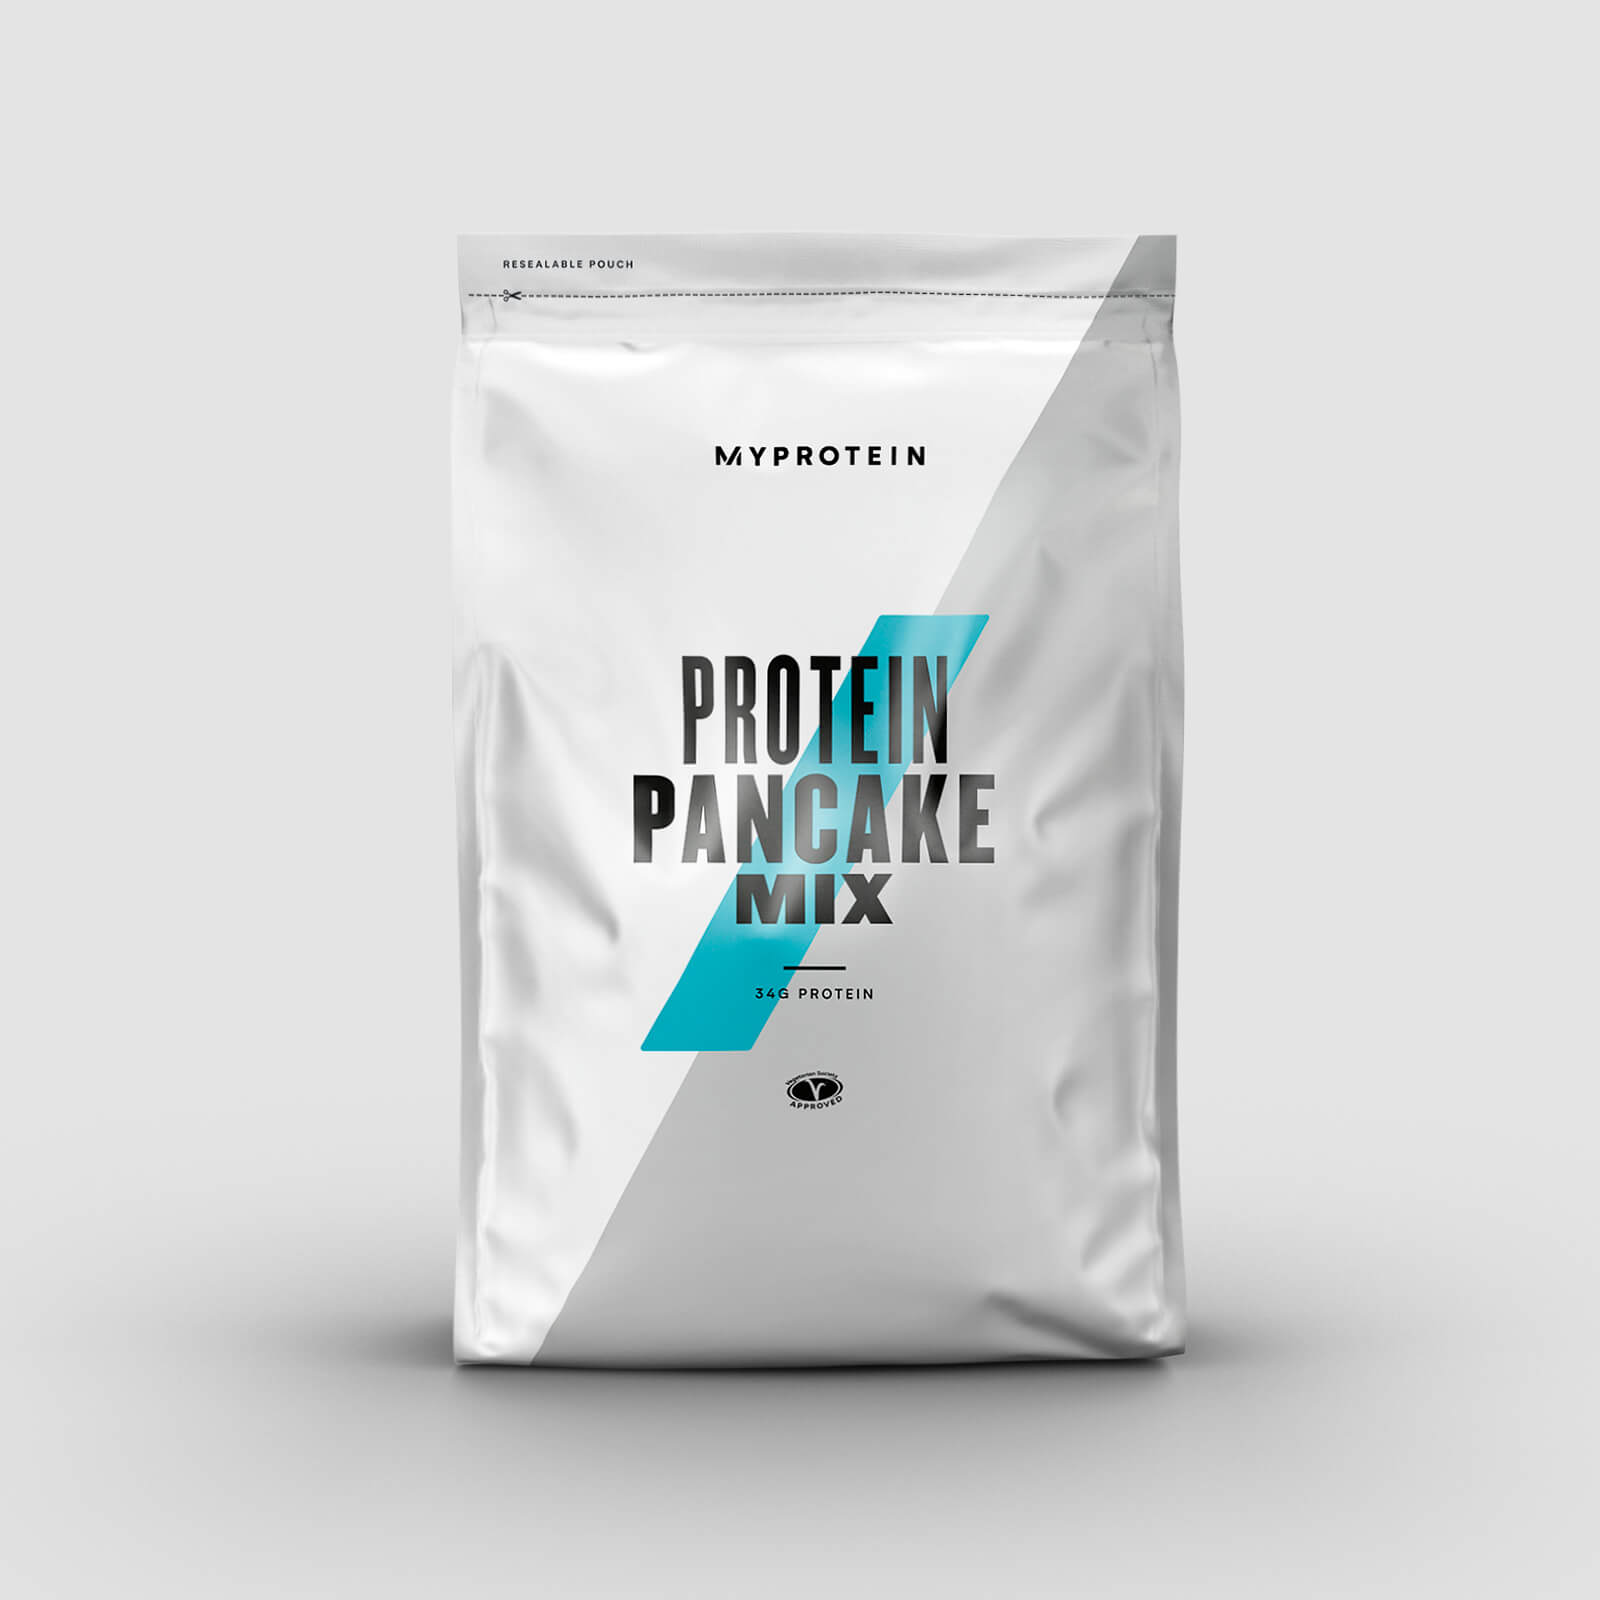 Myprotein Protein Pancake Mix - 500g - Maple Syrup